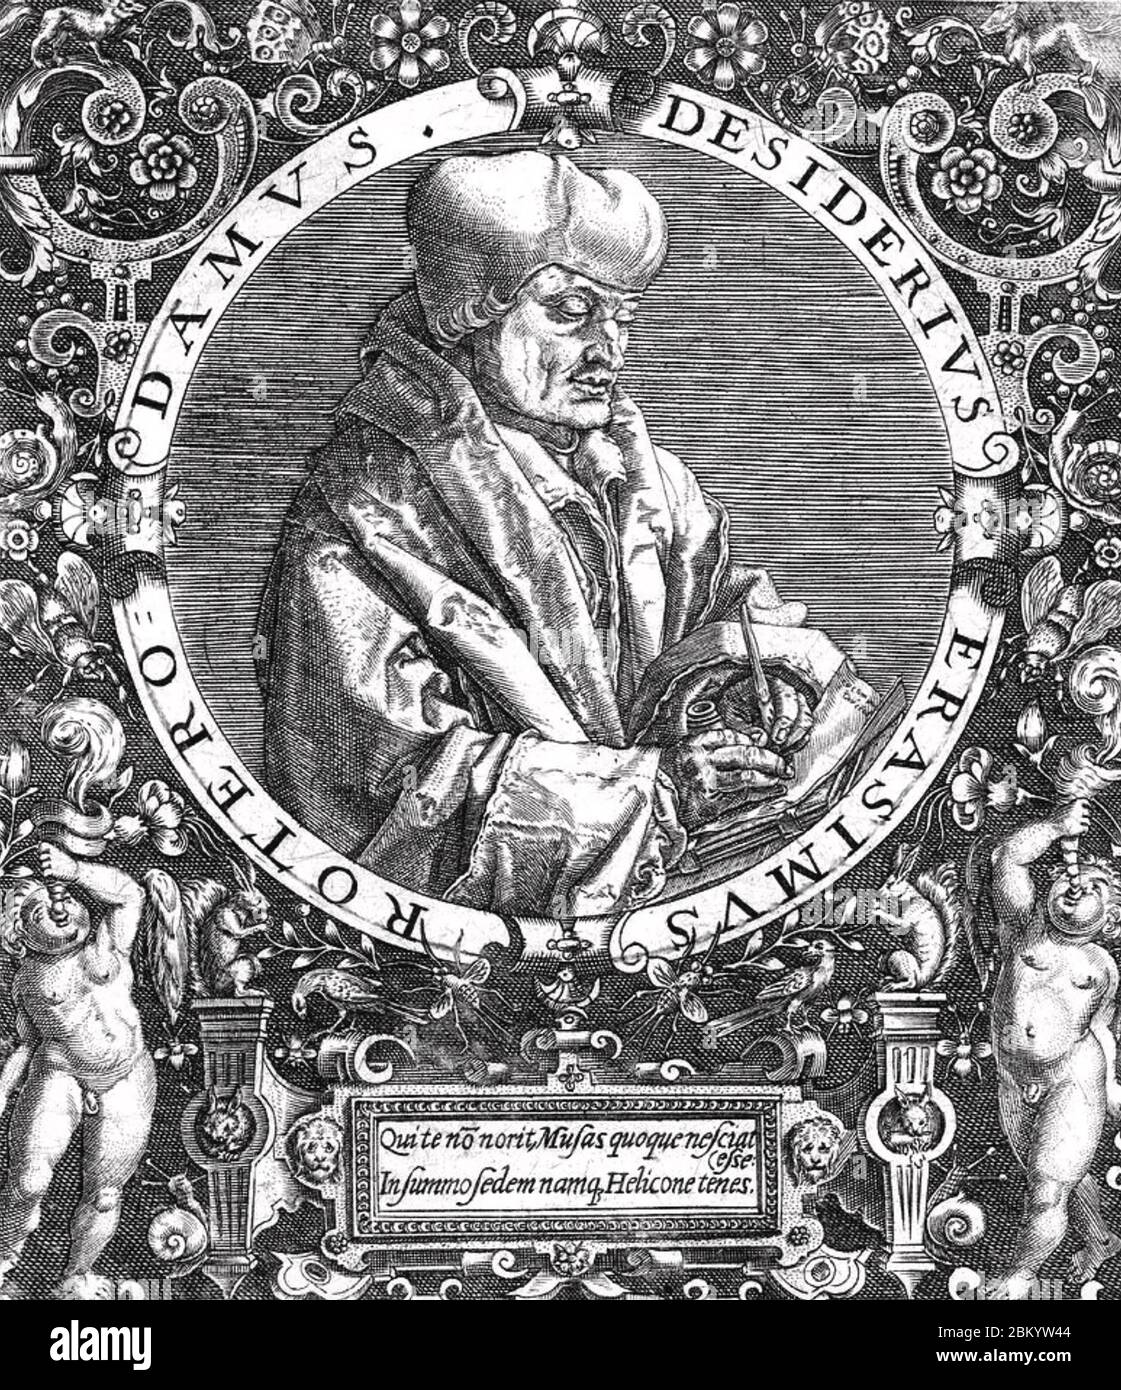 DESIDERIUS ERASMUS (1466-1536) philosophe hollandais de la Renaissance Banque D'Images